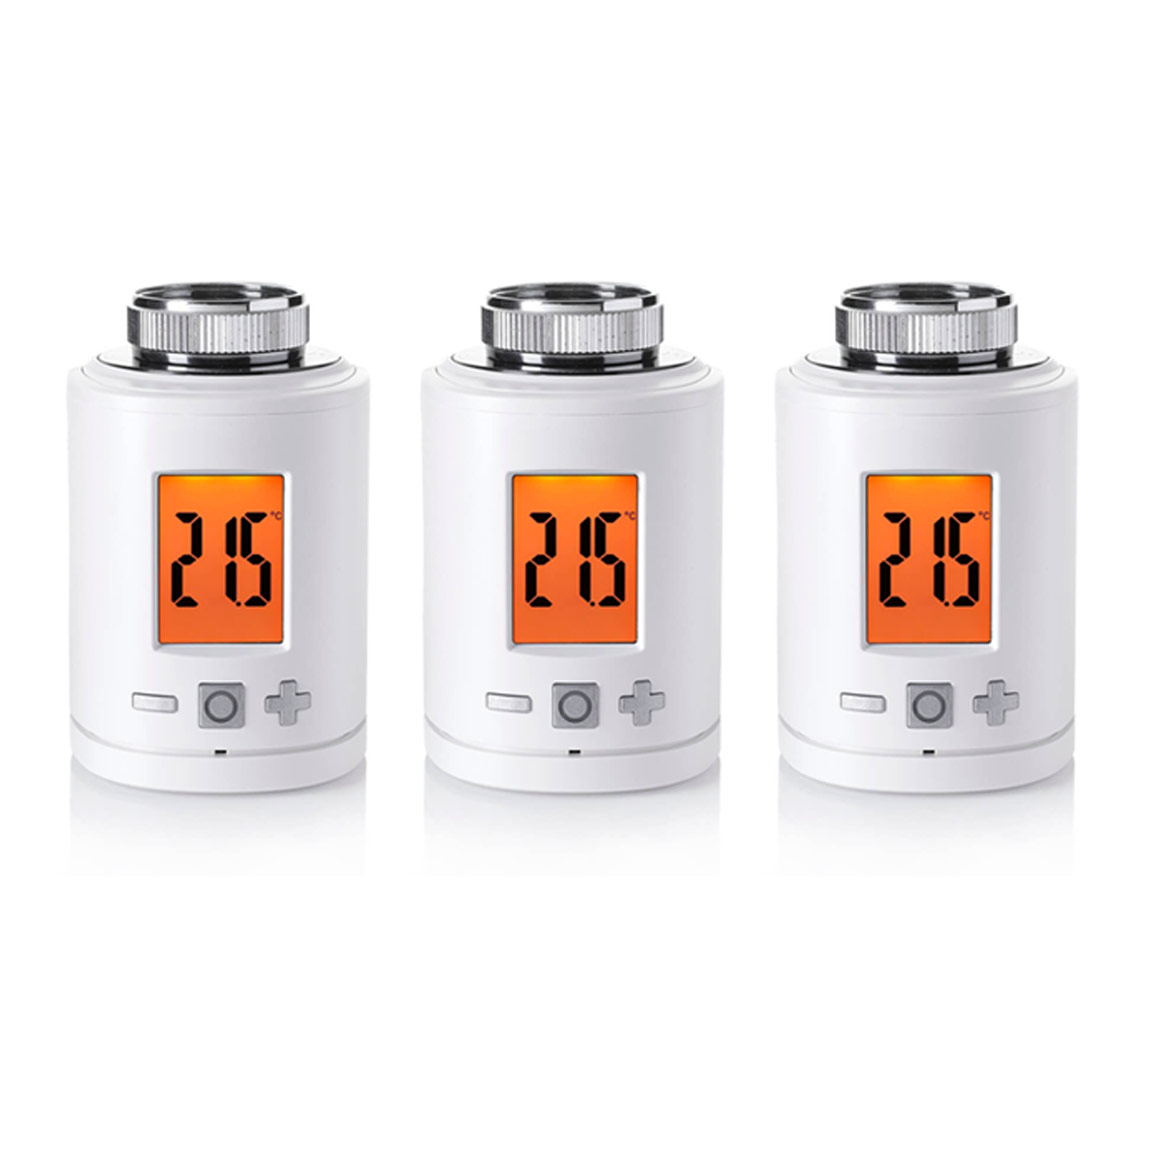 HOMEPILOT Heizkörper-Thermostat smart 3er-Set